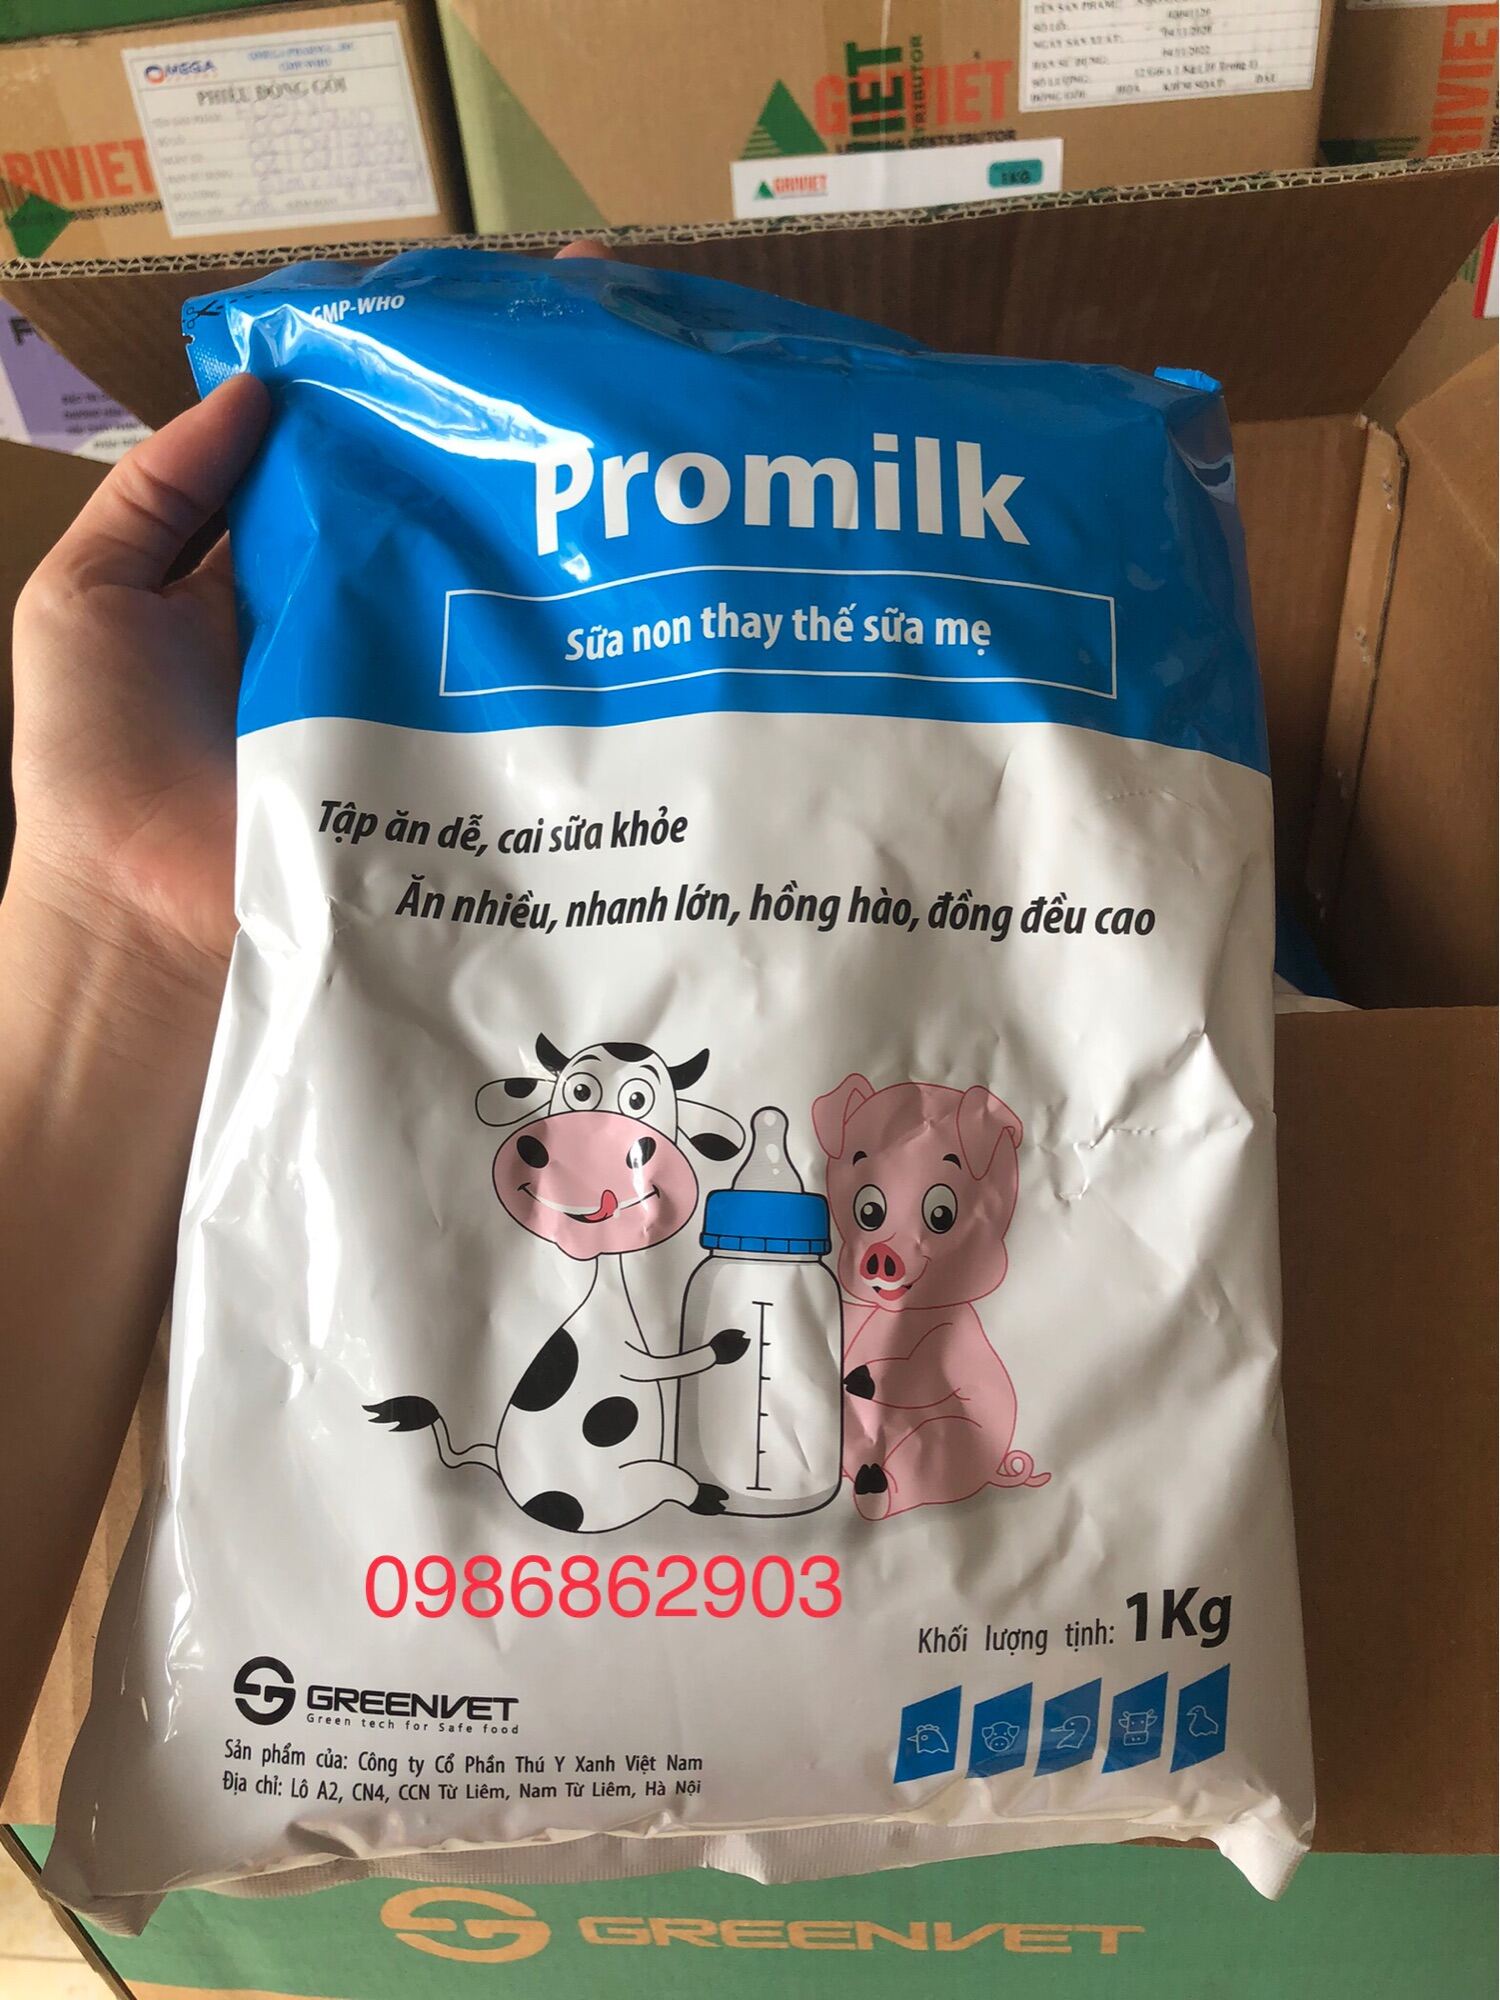 Promilk gói 1kg sữa non chuyên dùng thay thế sữa mẹ dành cho thú non ( chó,mèo,heo,dê,...)